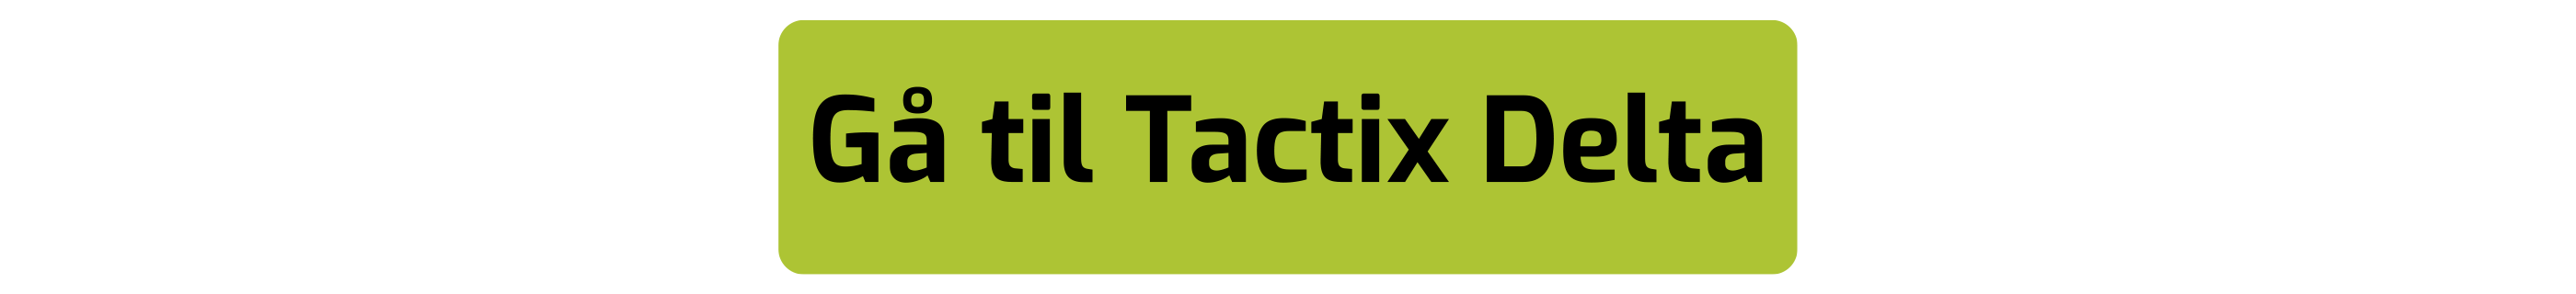 Køb Garmin Tactix Delta her knap